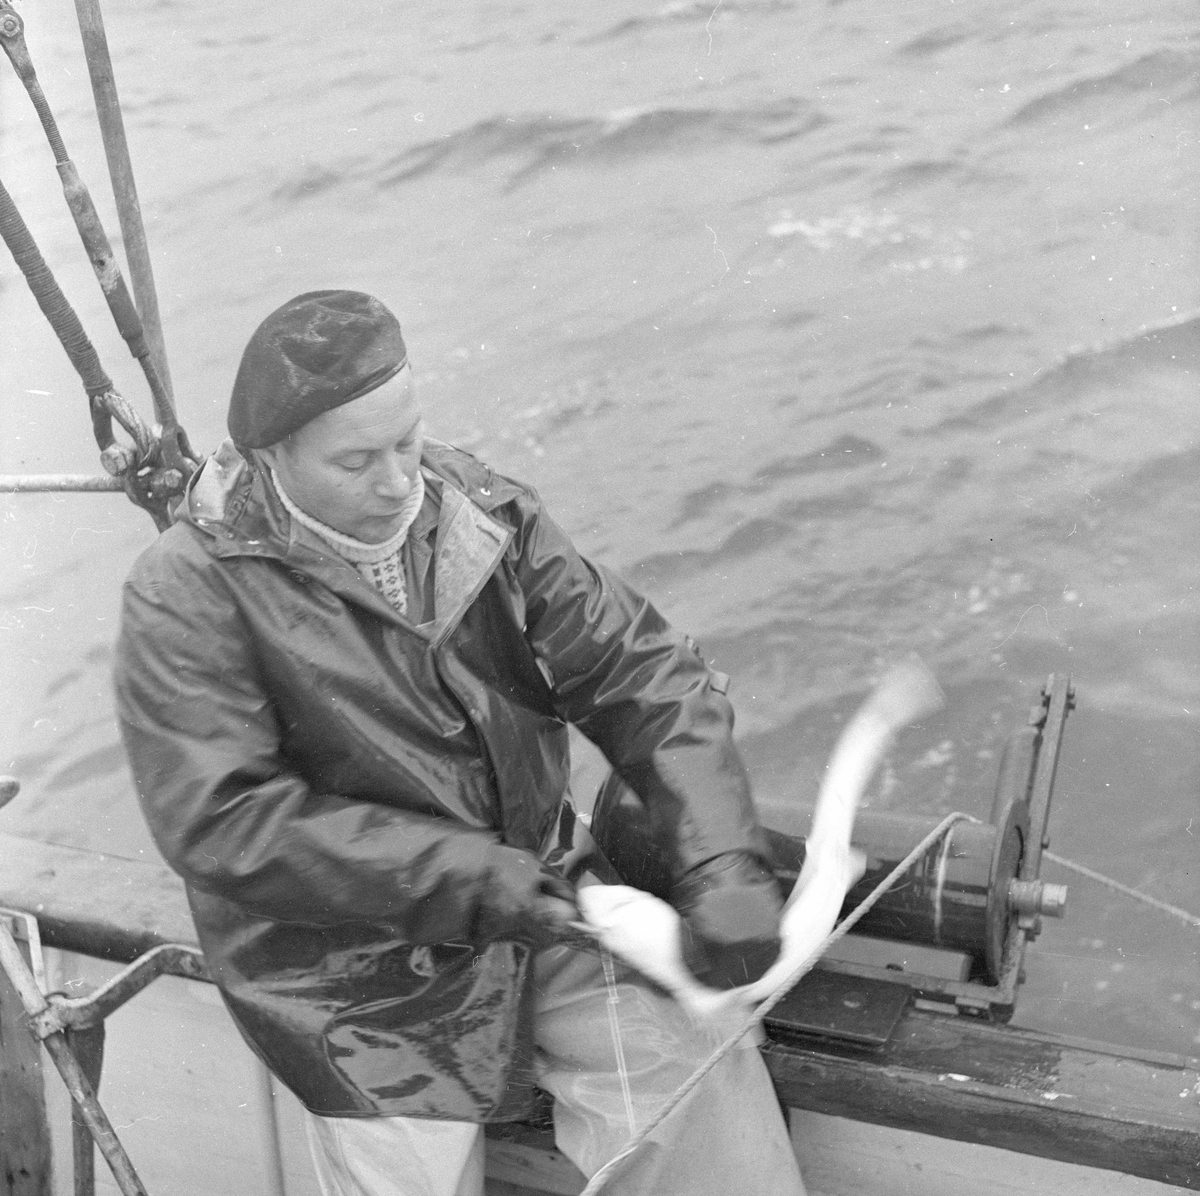 Pigghåfiske på Shetland.
Shetland, 14-22. mai 1958, mann trekker garn og tar seg av fiskefangsten.